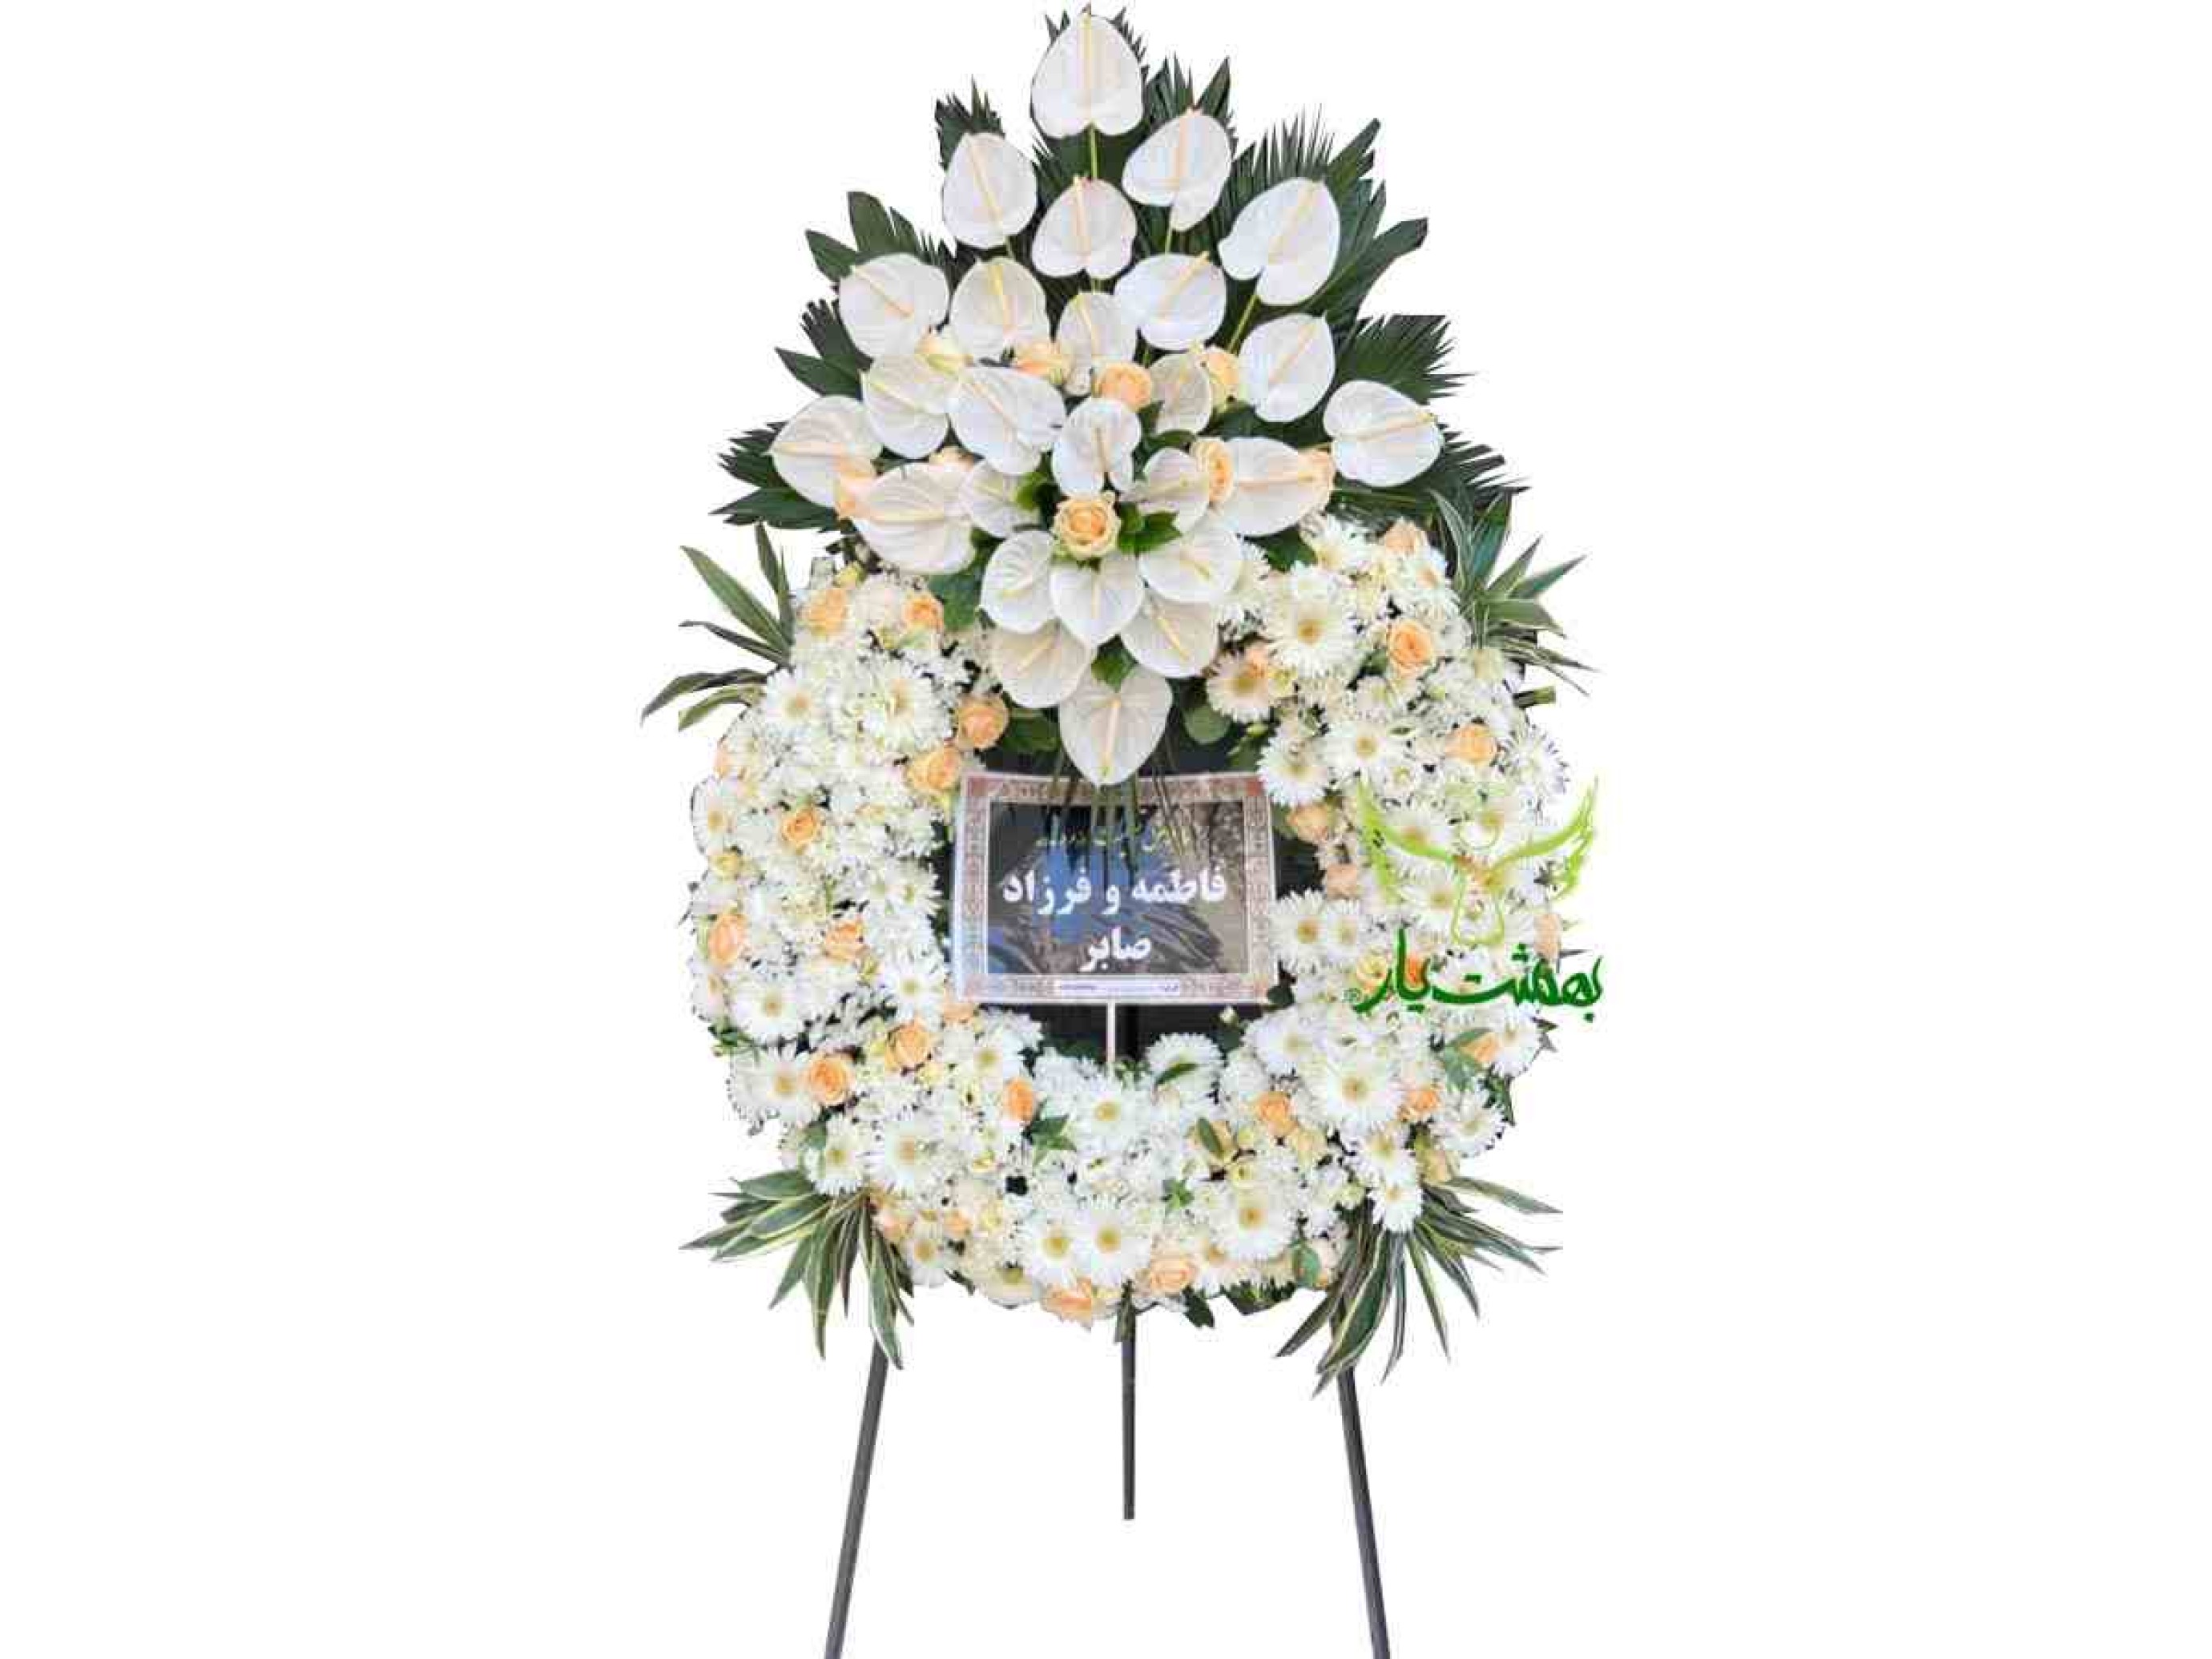  خرید تاج گل سفید مراسم ختم برای تسلیت 